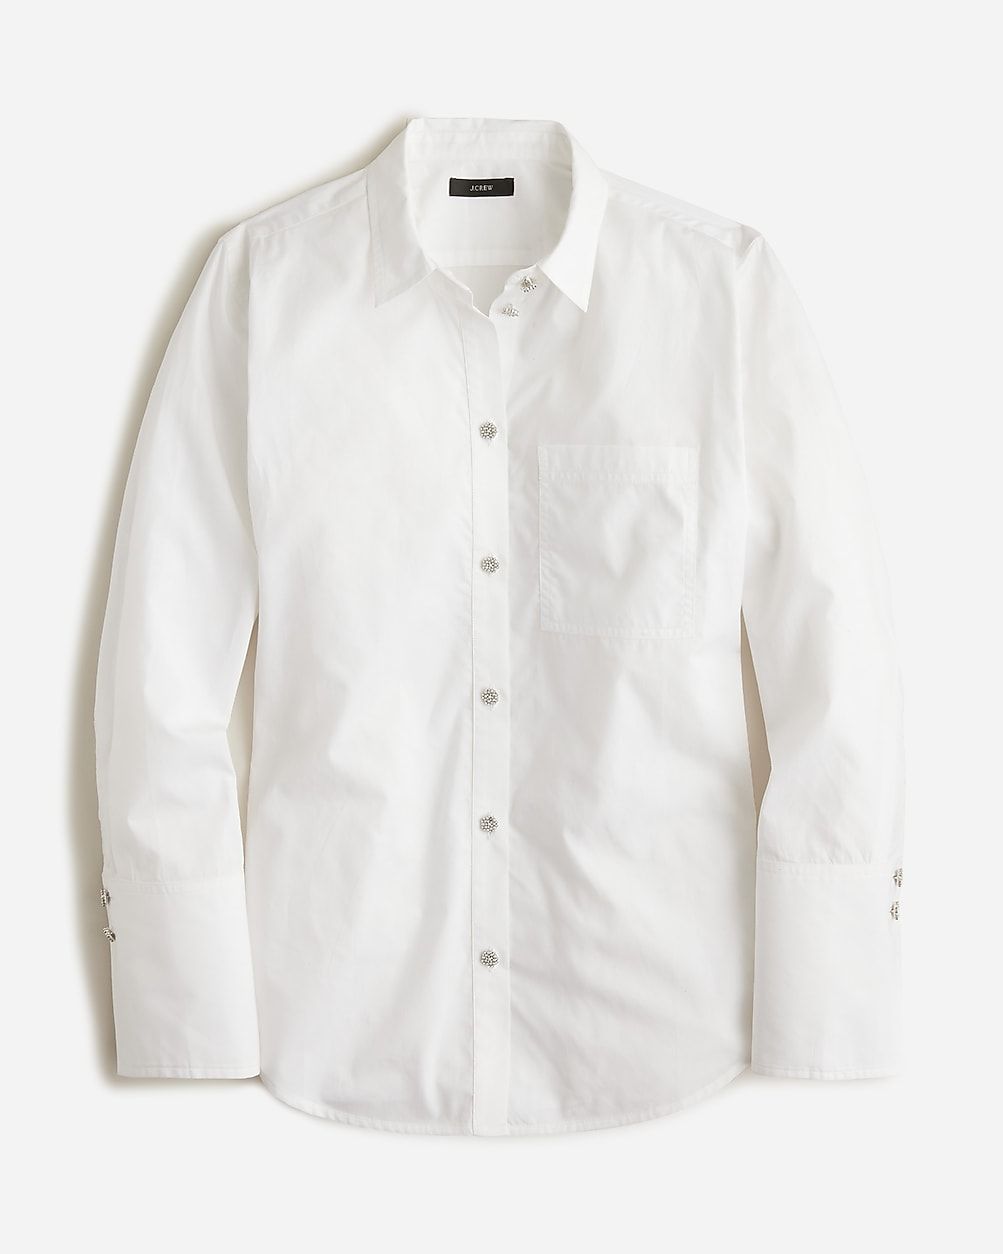 Garçon cotton poplin shirt with pearl buttons | J.Crew US